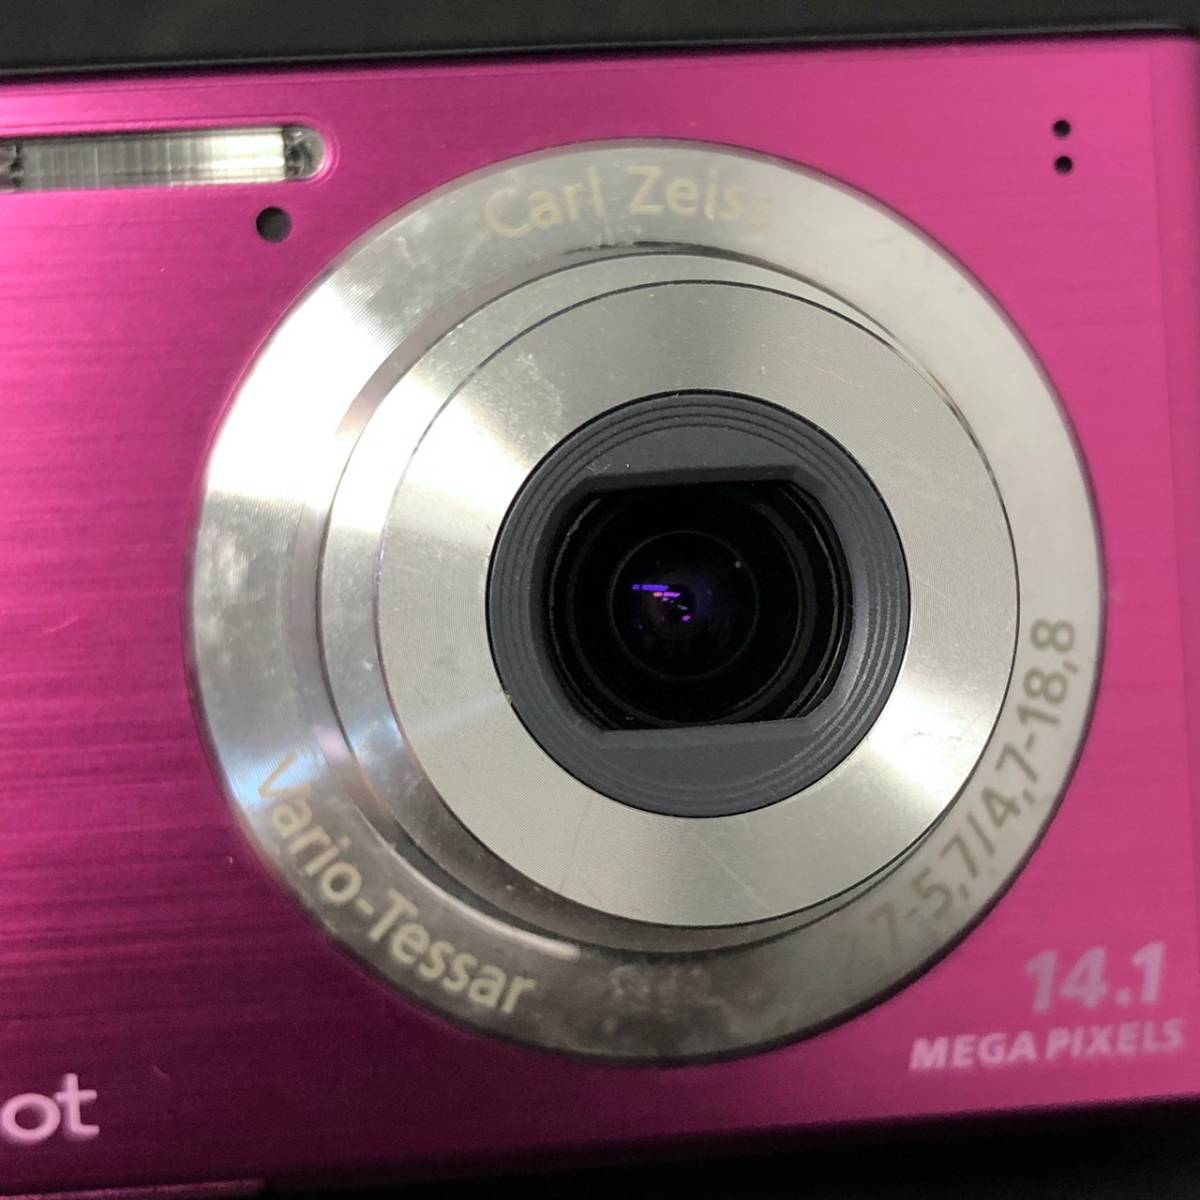 BAm134I 60 SONY DSC-W550 Cyber-shot サイバーショット デジタルカメラ ピンク SDカード8GB 説明書付き 充電器 ケース_画像8